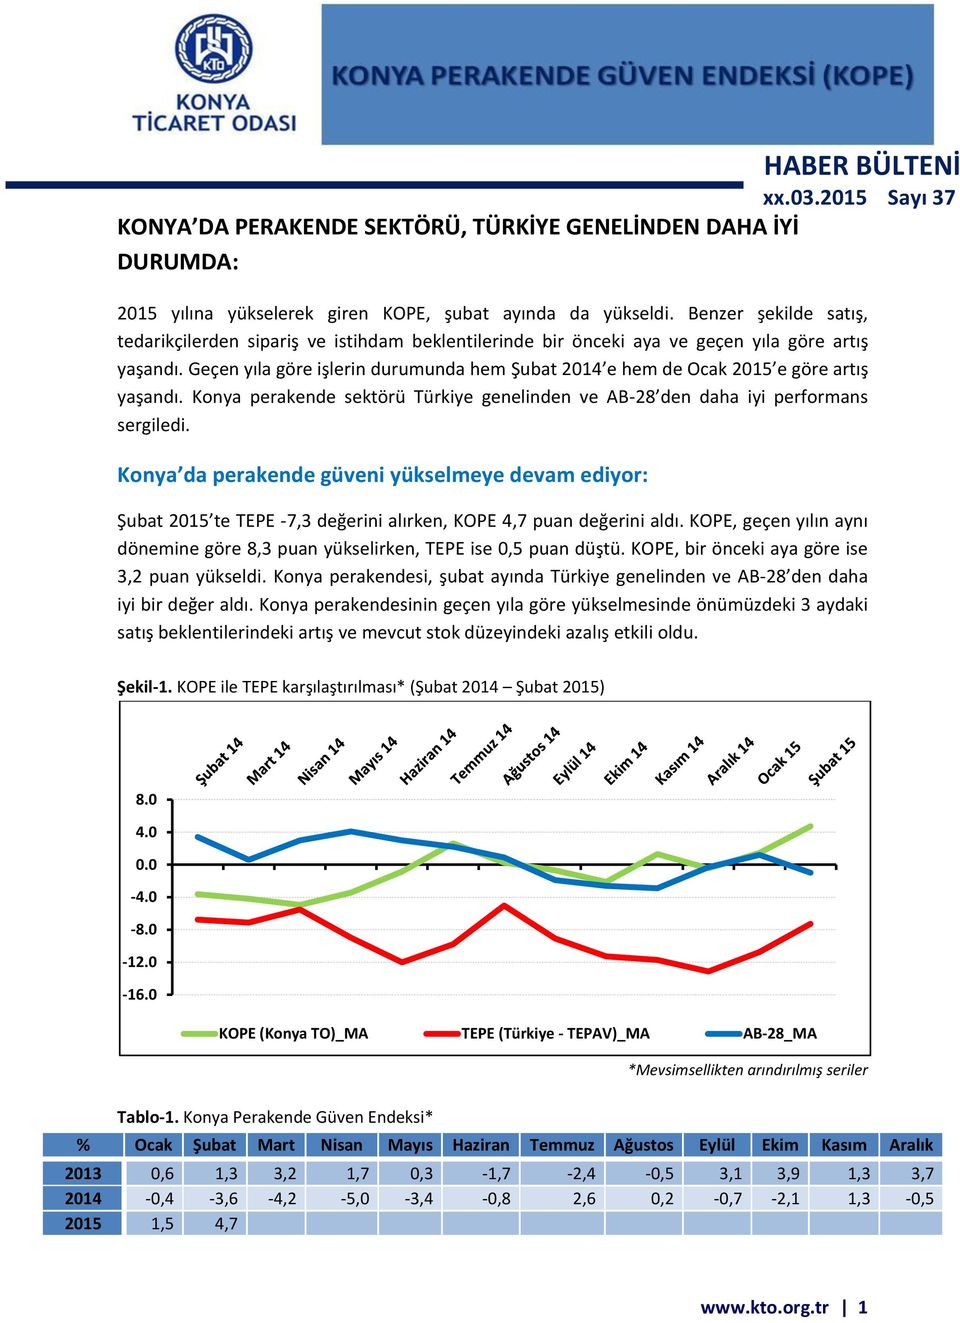 Geçen yıla göre işlerin durumunda hem Şubat 2014 e hem de Ocak 2015 e göre artış yaşandı. Konya perakende sektörü Türkiye genelinden ve AB-28 den daha iyi performans sergiledi.